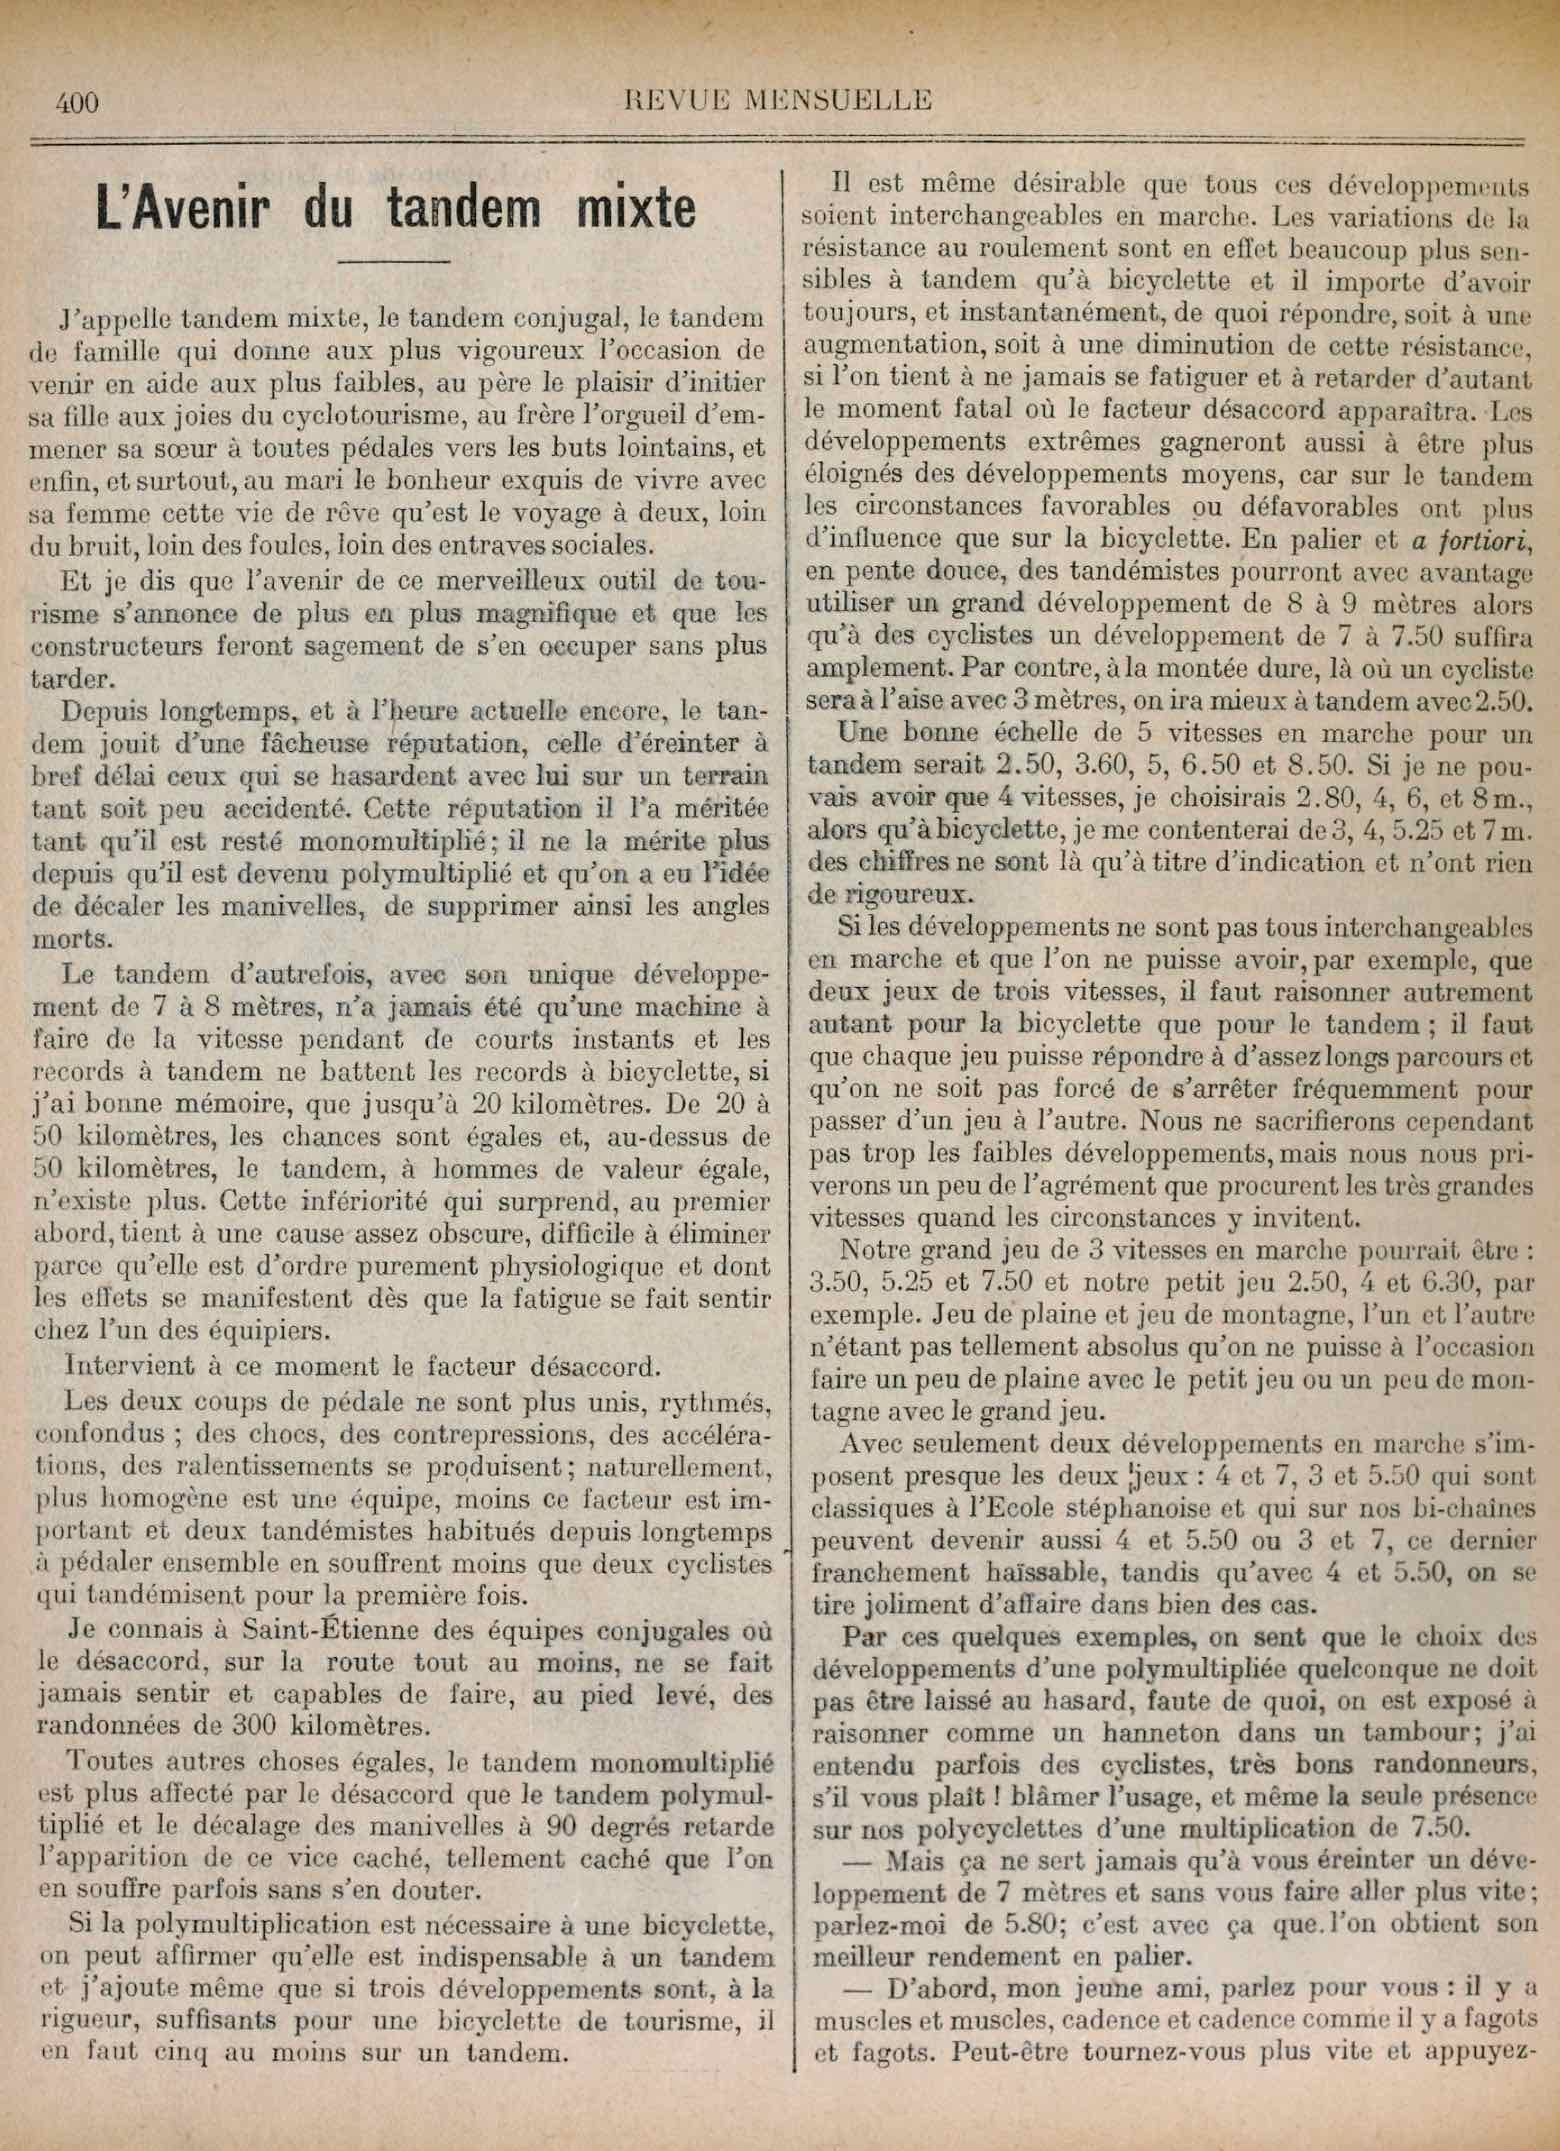 T.C.F. Revue Mensuelle September 1910 - L Avenir du tandem mixte (part I) scan 1 main image